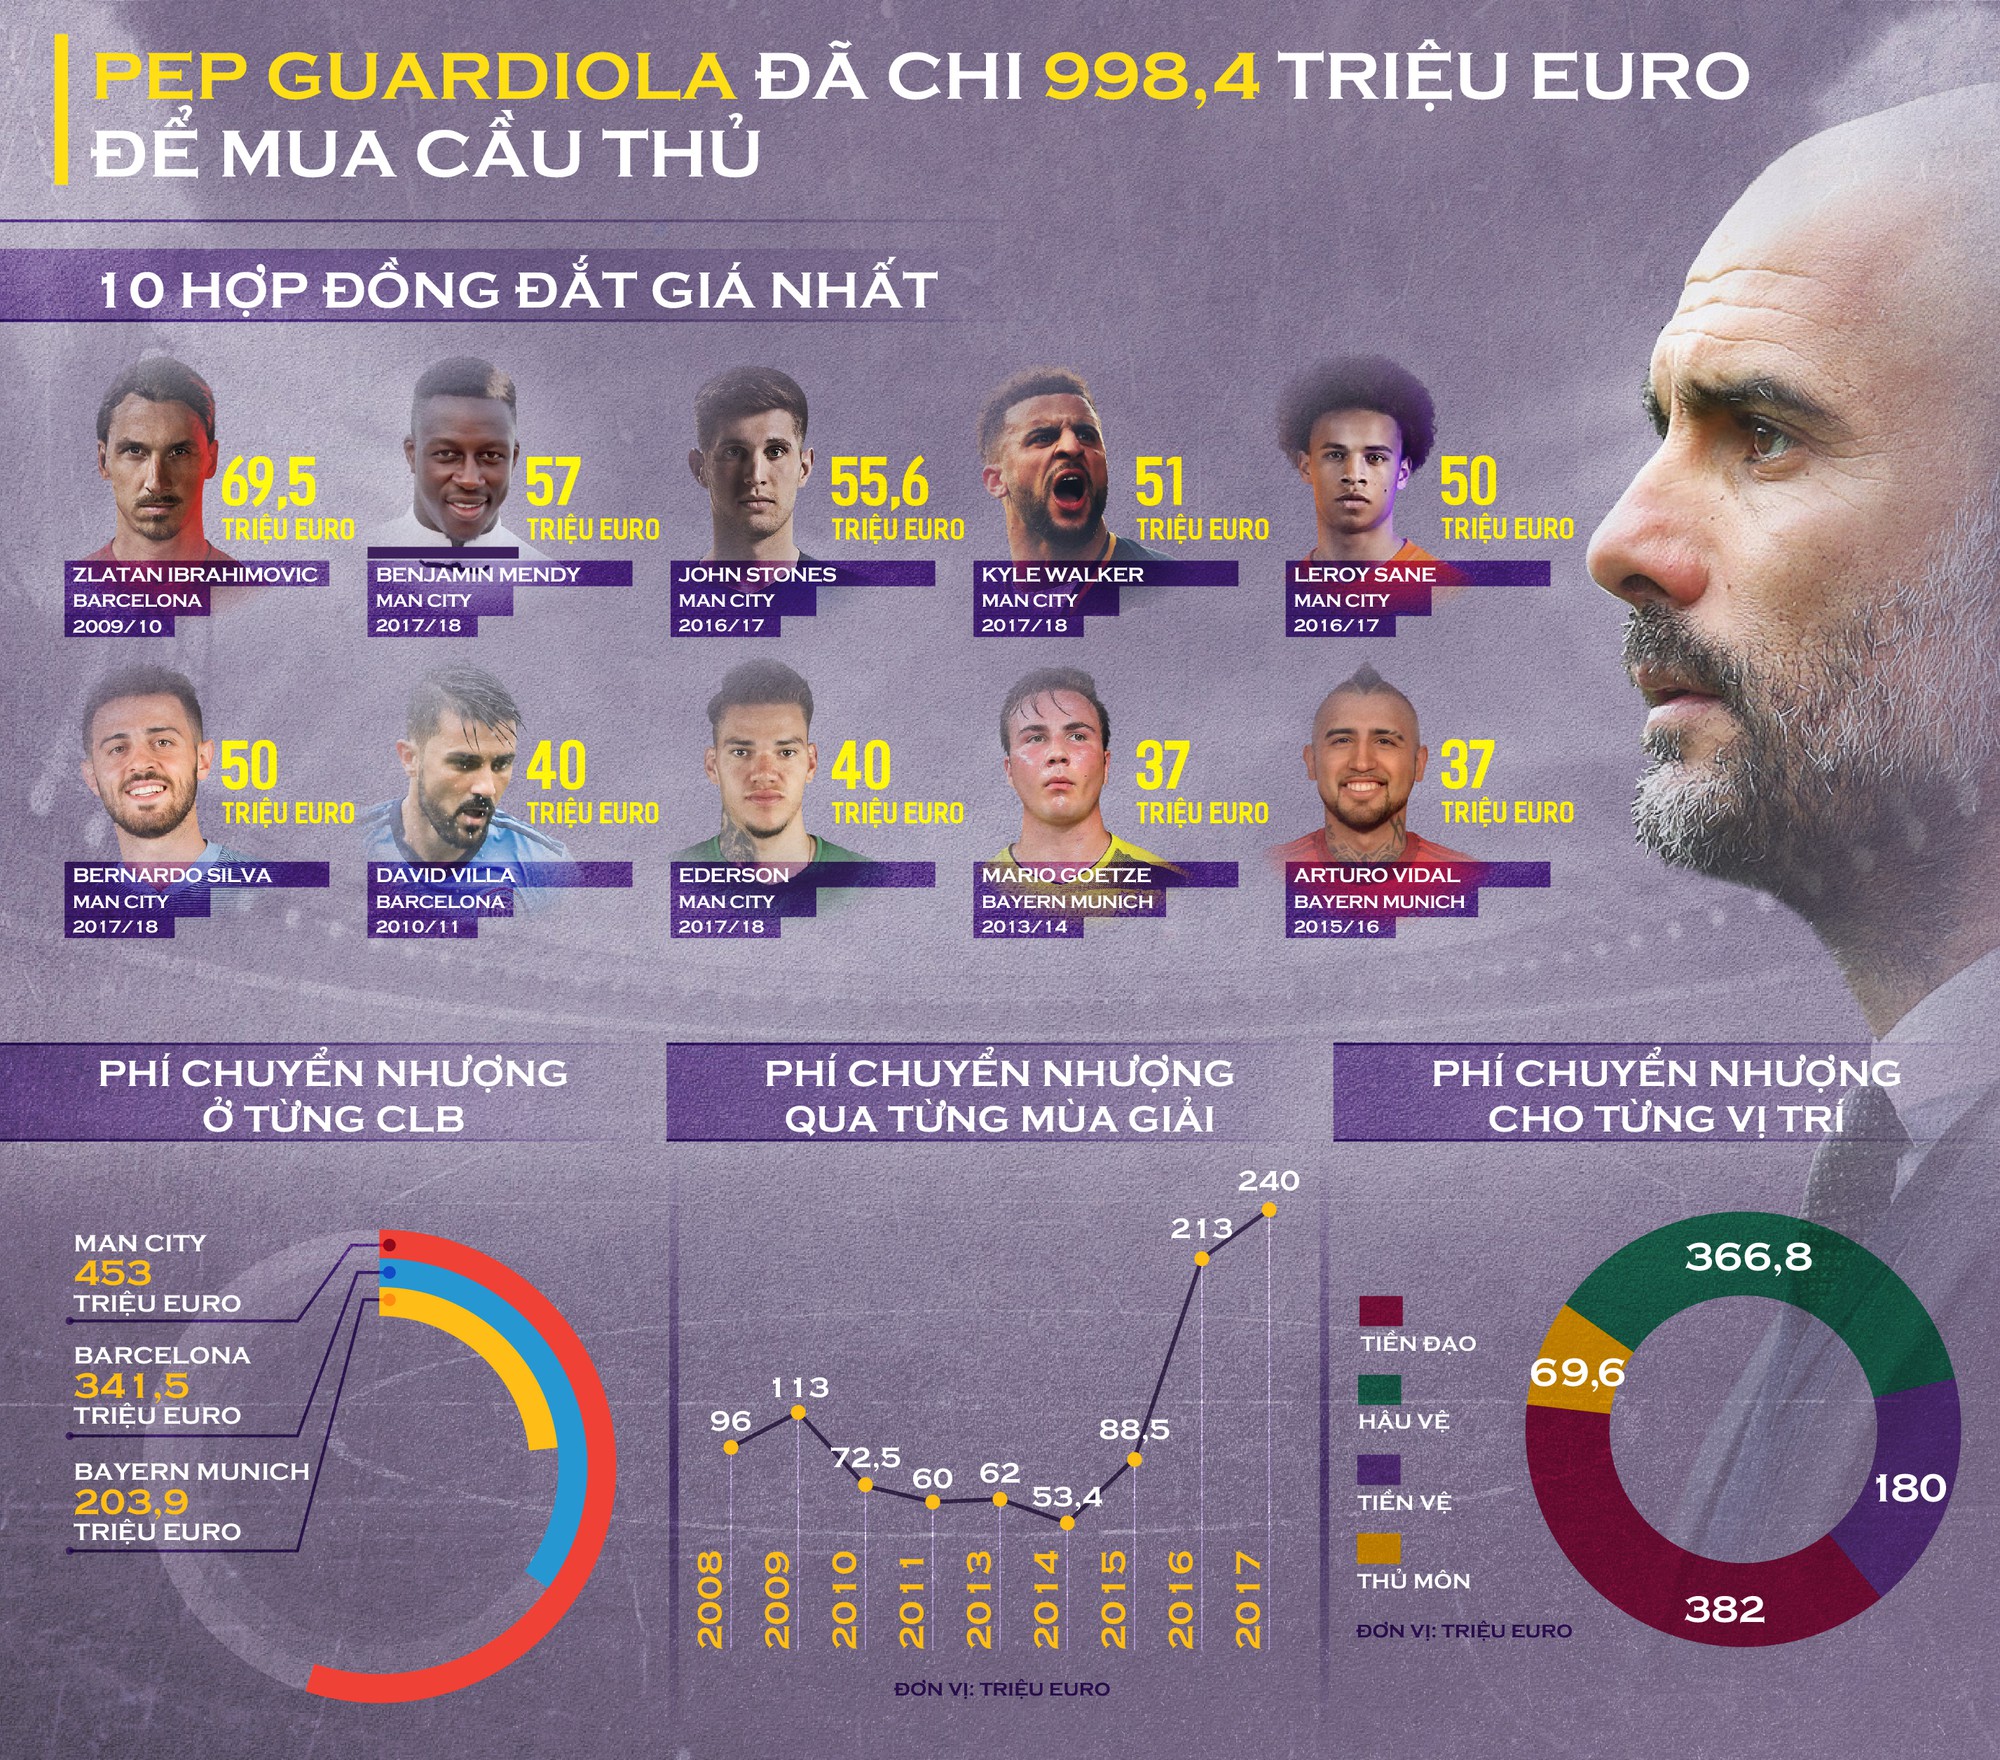 HLV Pep Guardiola đã chi gần 1 tỷ euro để mua cầu thủ trong 8 mùa giải ngồi ghế HLV